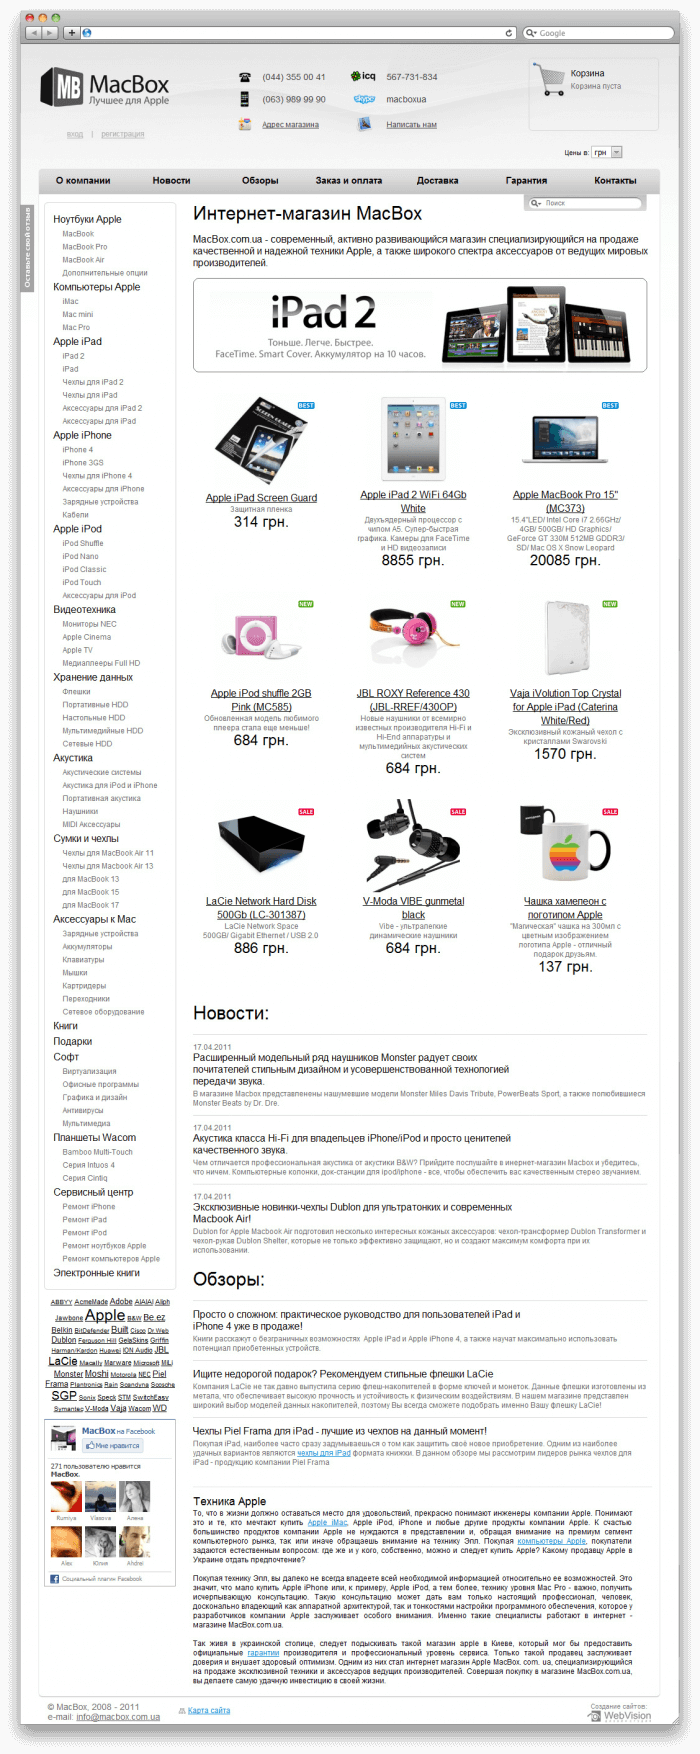 Online shop MacBox-webvision.ua